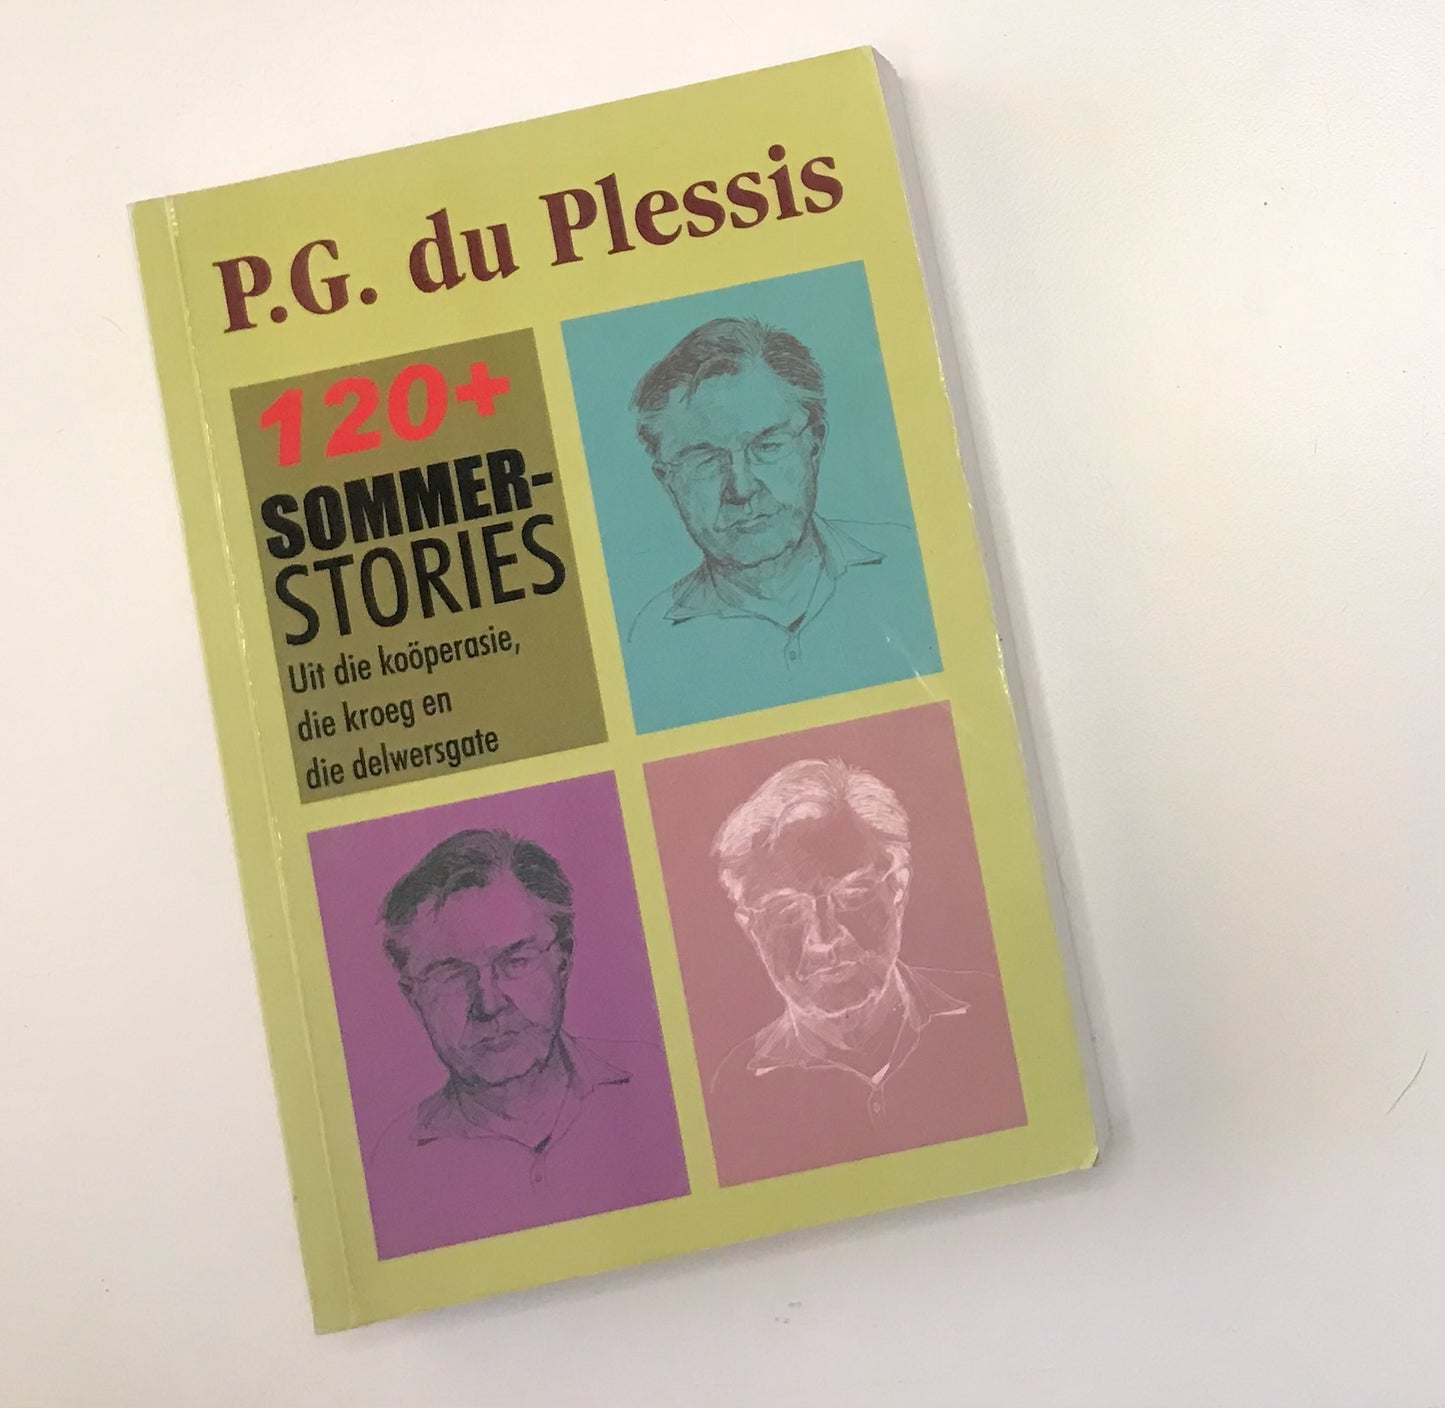 120+ Sommerstories uit die koöperasie, die kroeg en die delwersgate - P.G. du Plessis